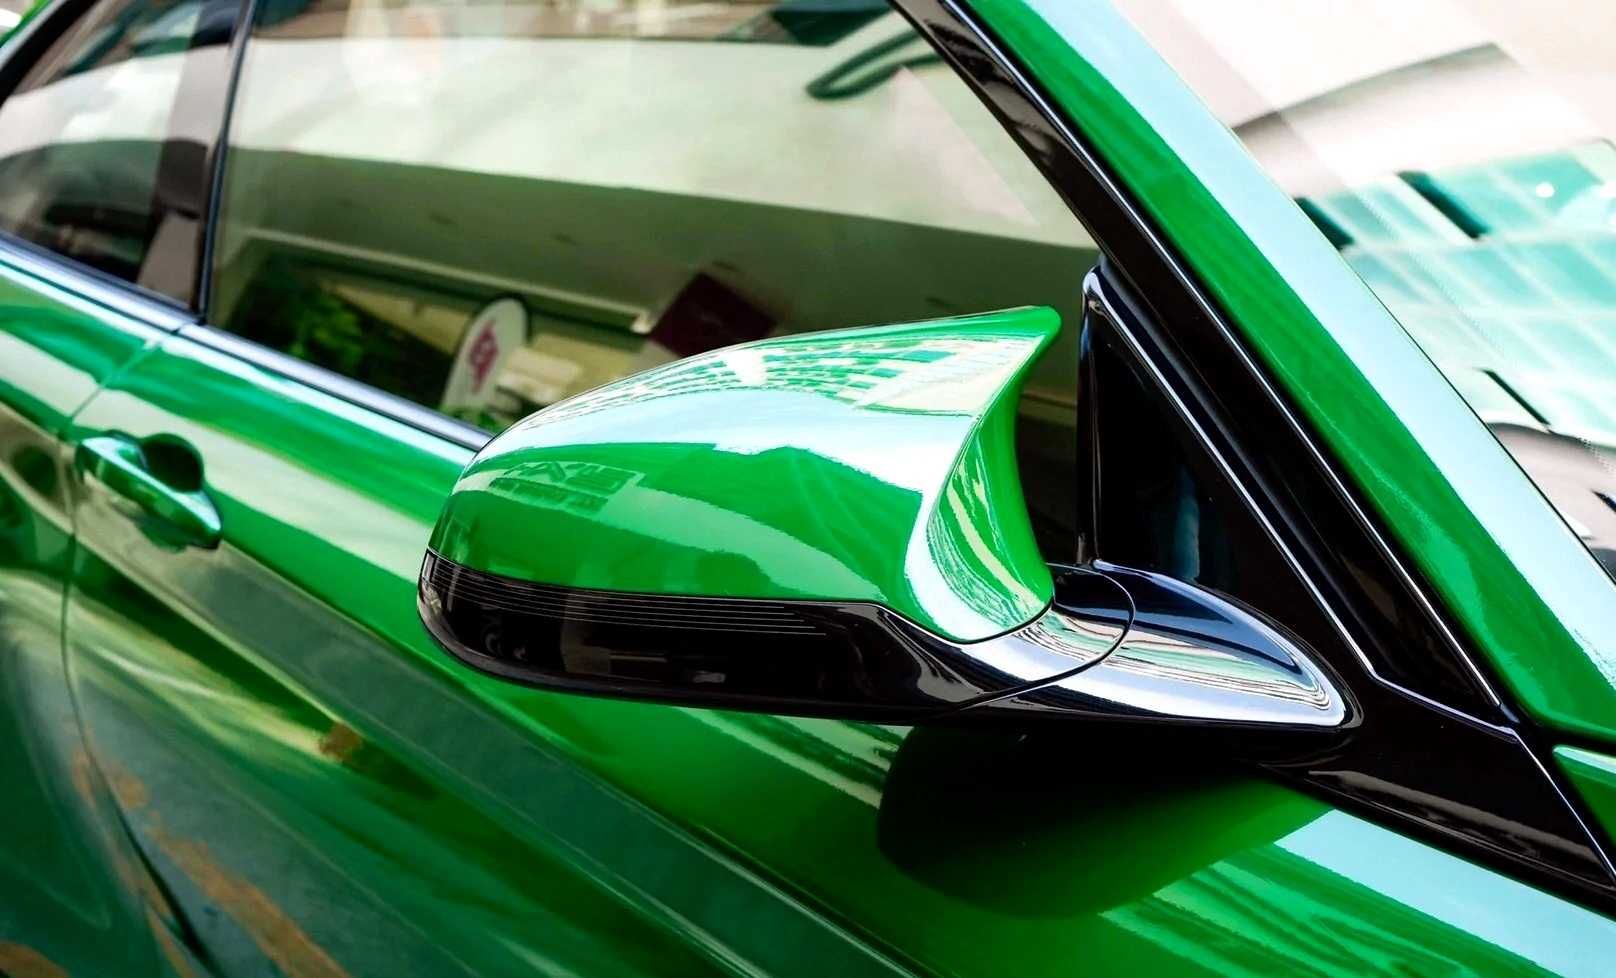 Folia zielona zielony metallic połysk 20m x 152cm okleina samochodowa